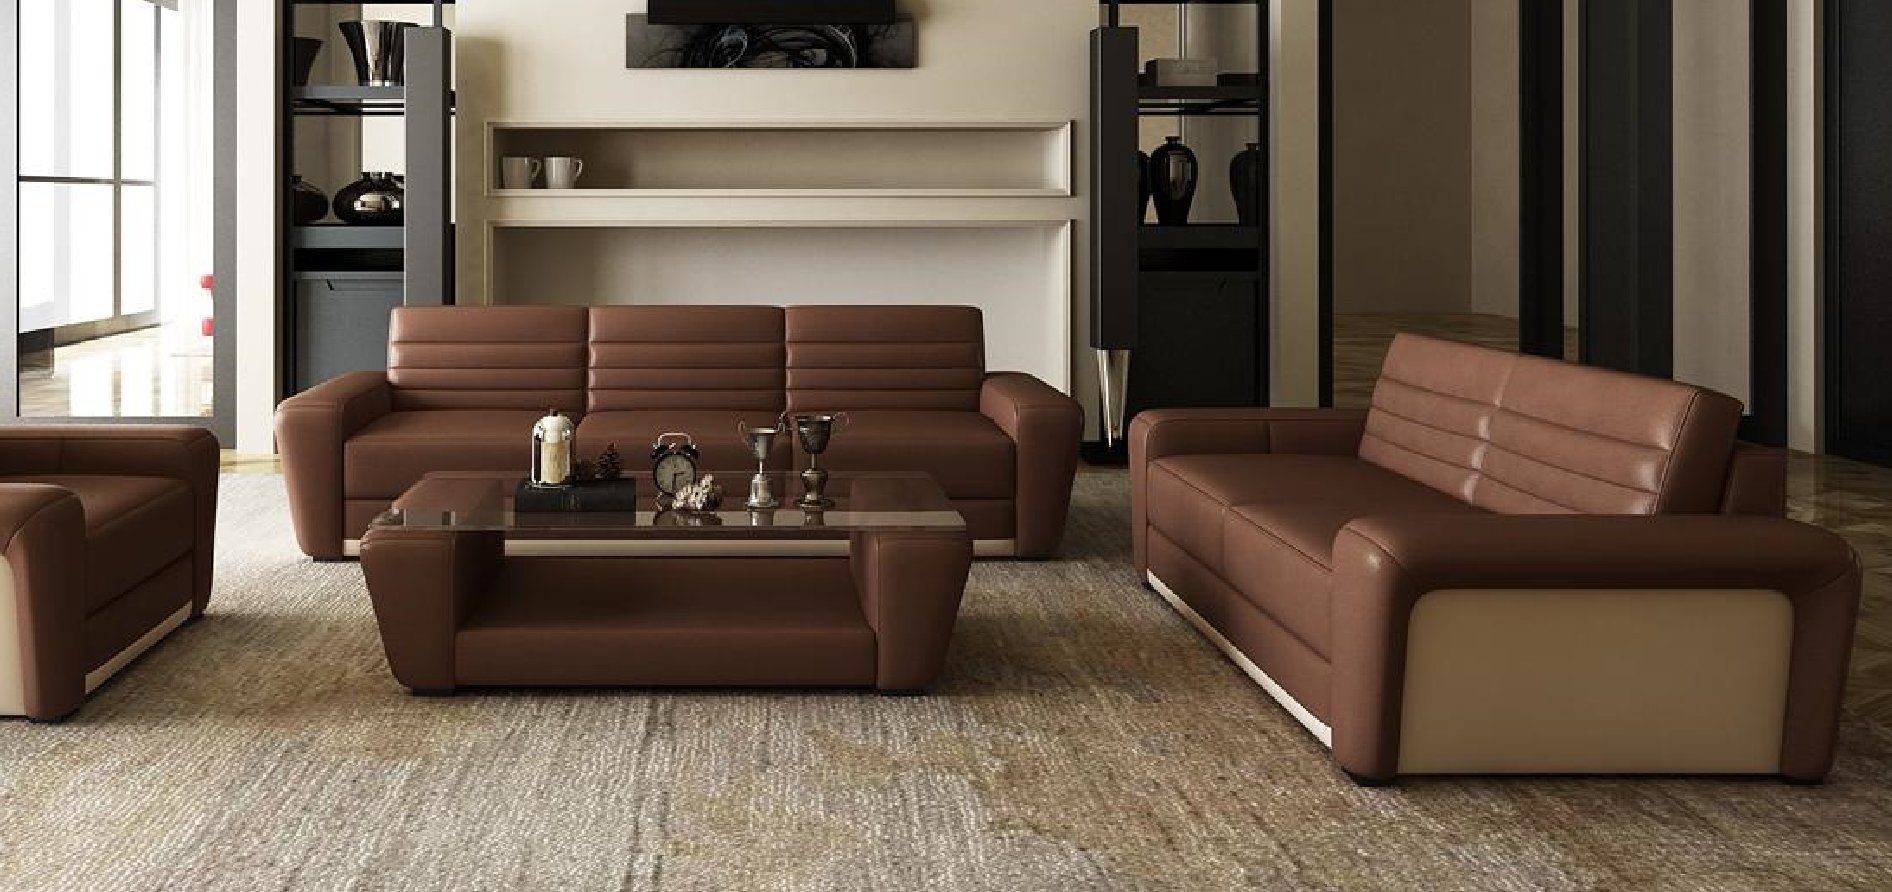 JVmoebel Sofa Sitzer Sofagarnitur Europe Made Couche 3+2 in neue Modern, Luxus braune